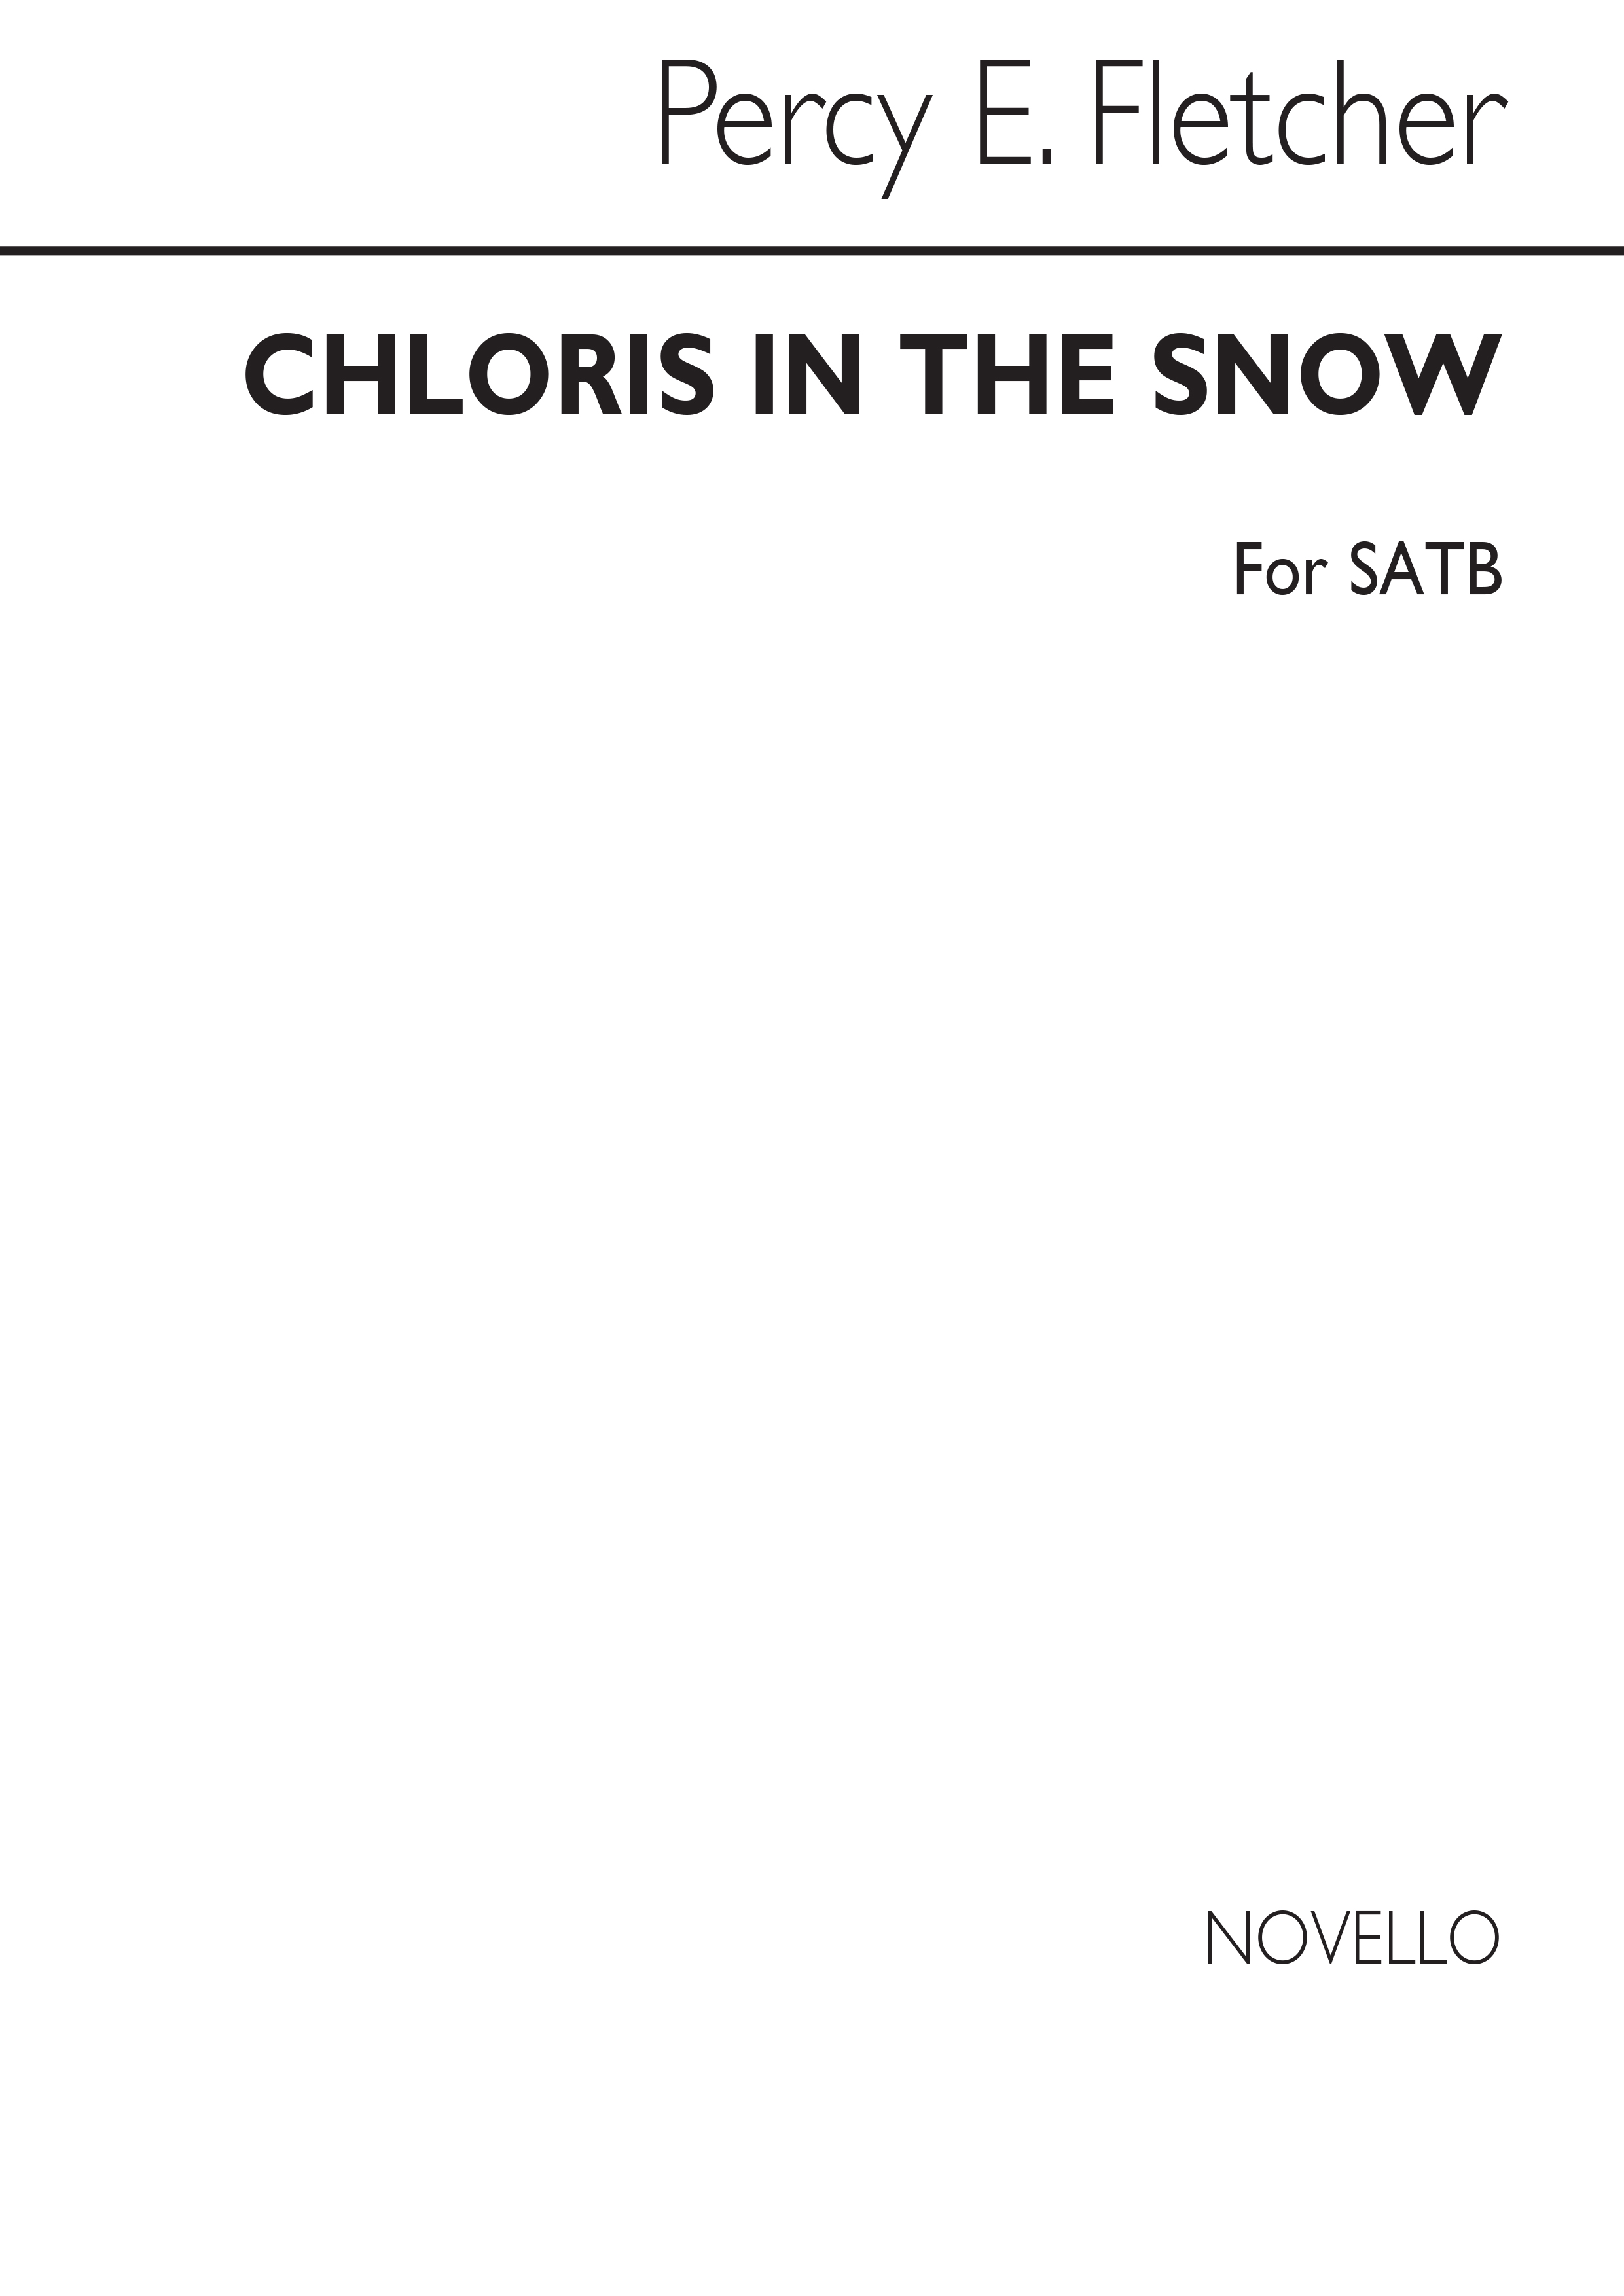 Percy E. Fletcher: Chloris In The Snow Satb/Piano